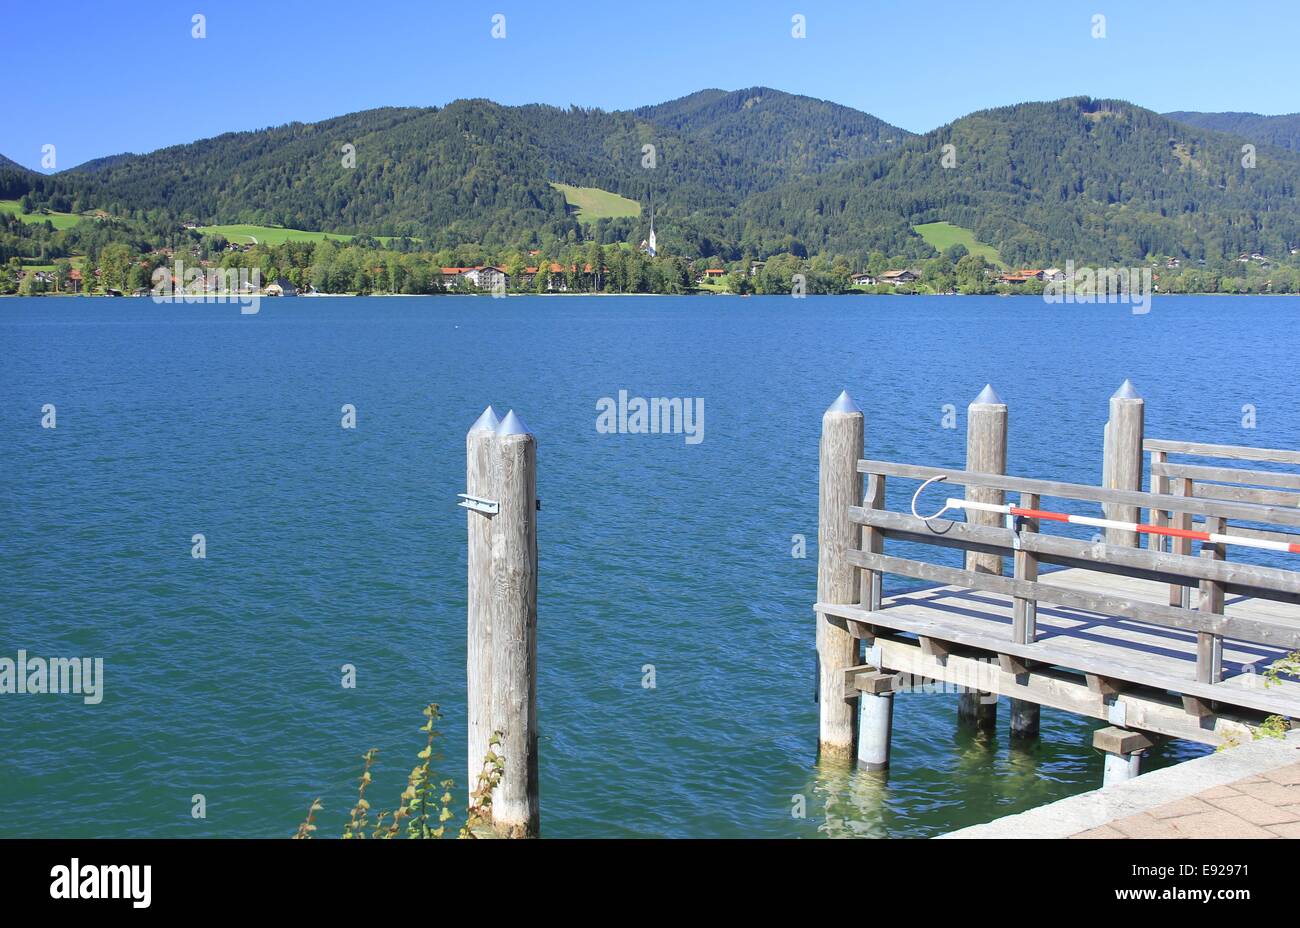 At lake Tegernsee, Bavaria Stock Photo